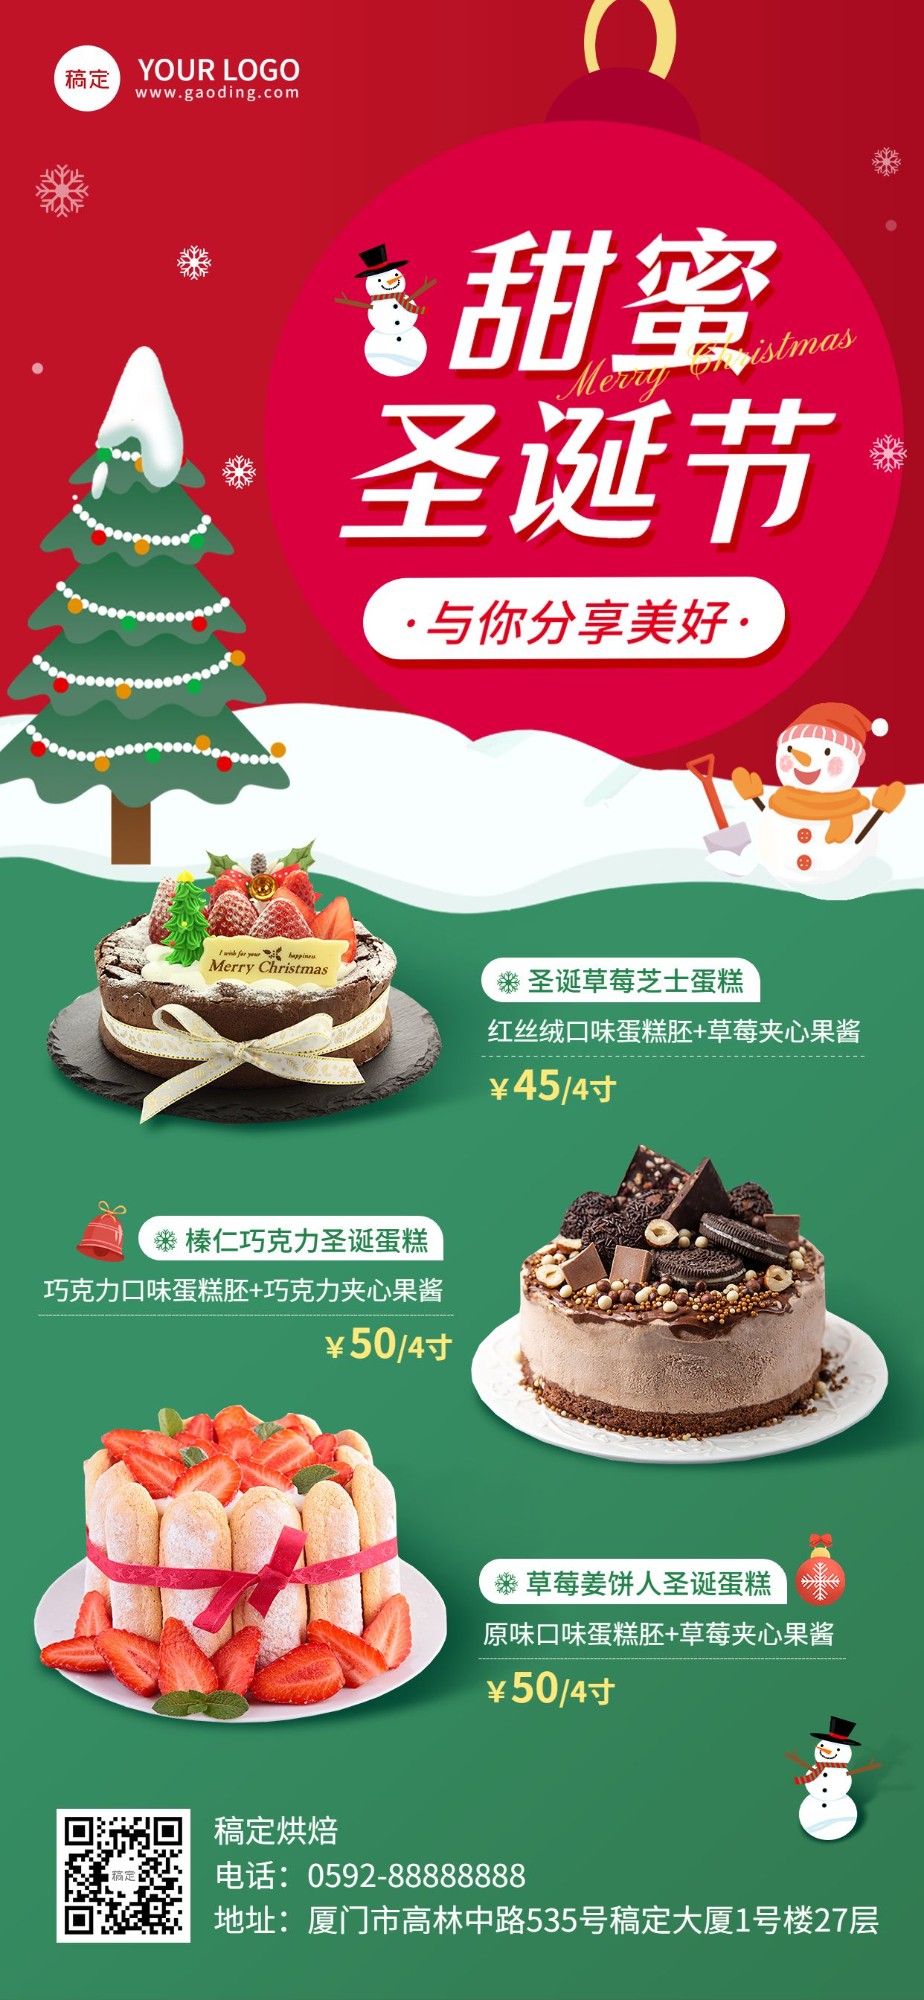 圣诞节餐饮蛋糕甜品门店产品营销全屏竖版海报预览效果